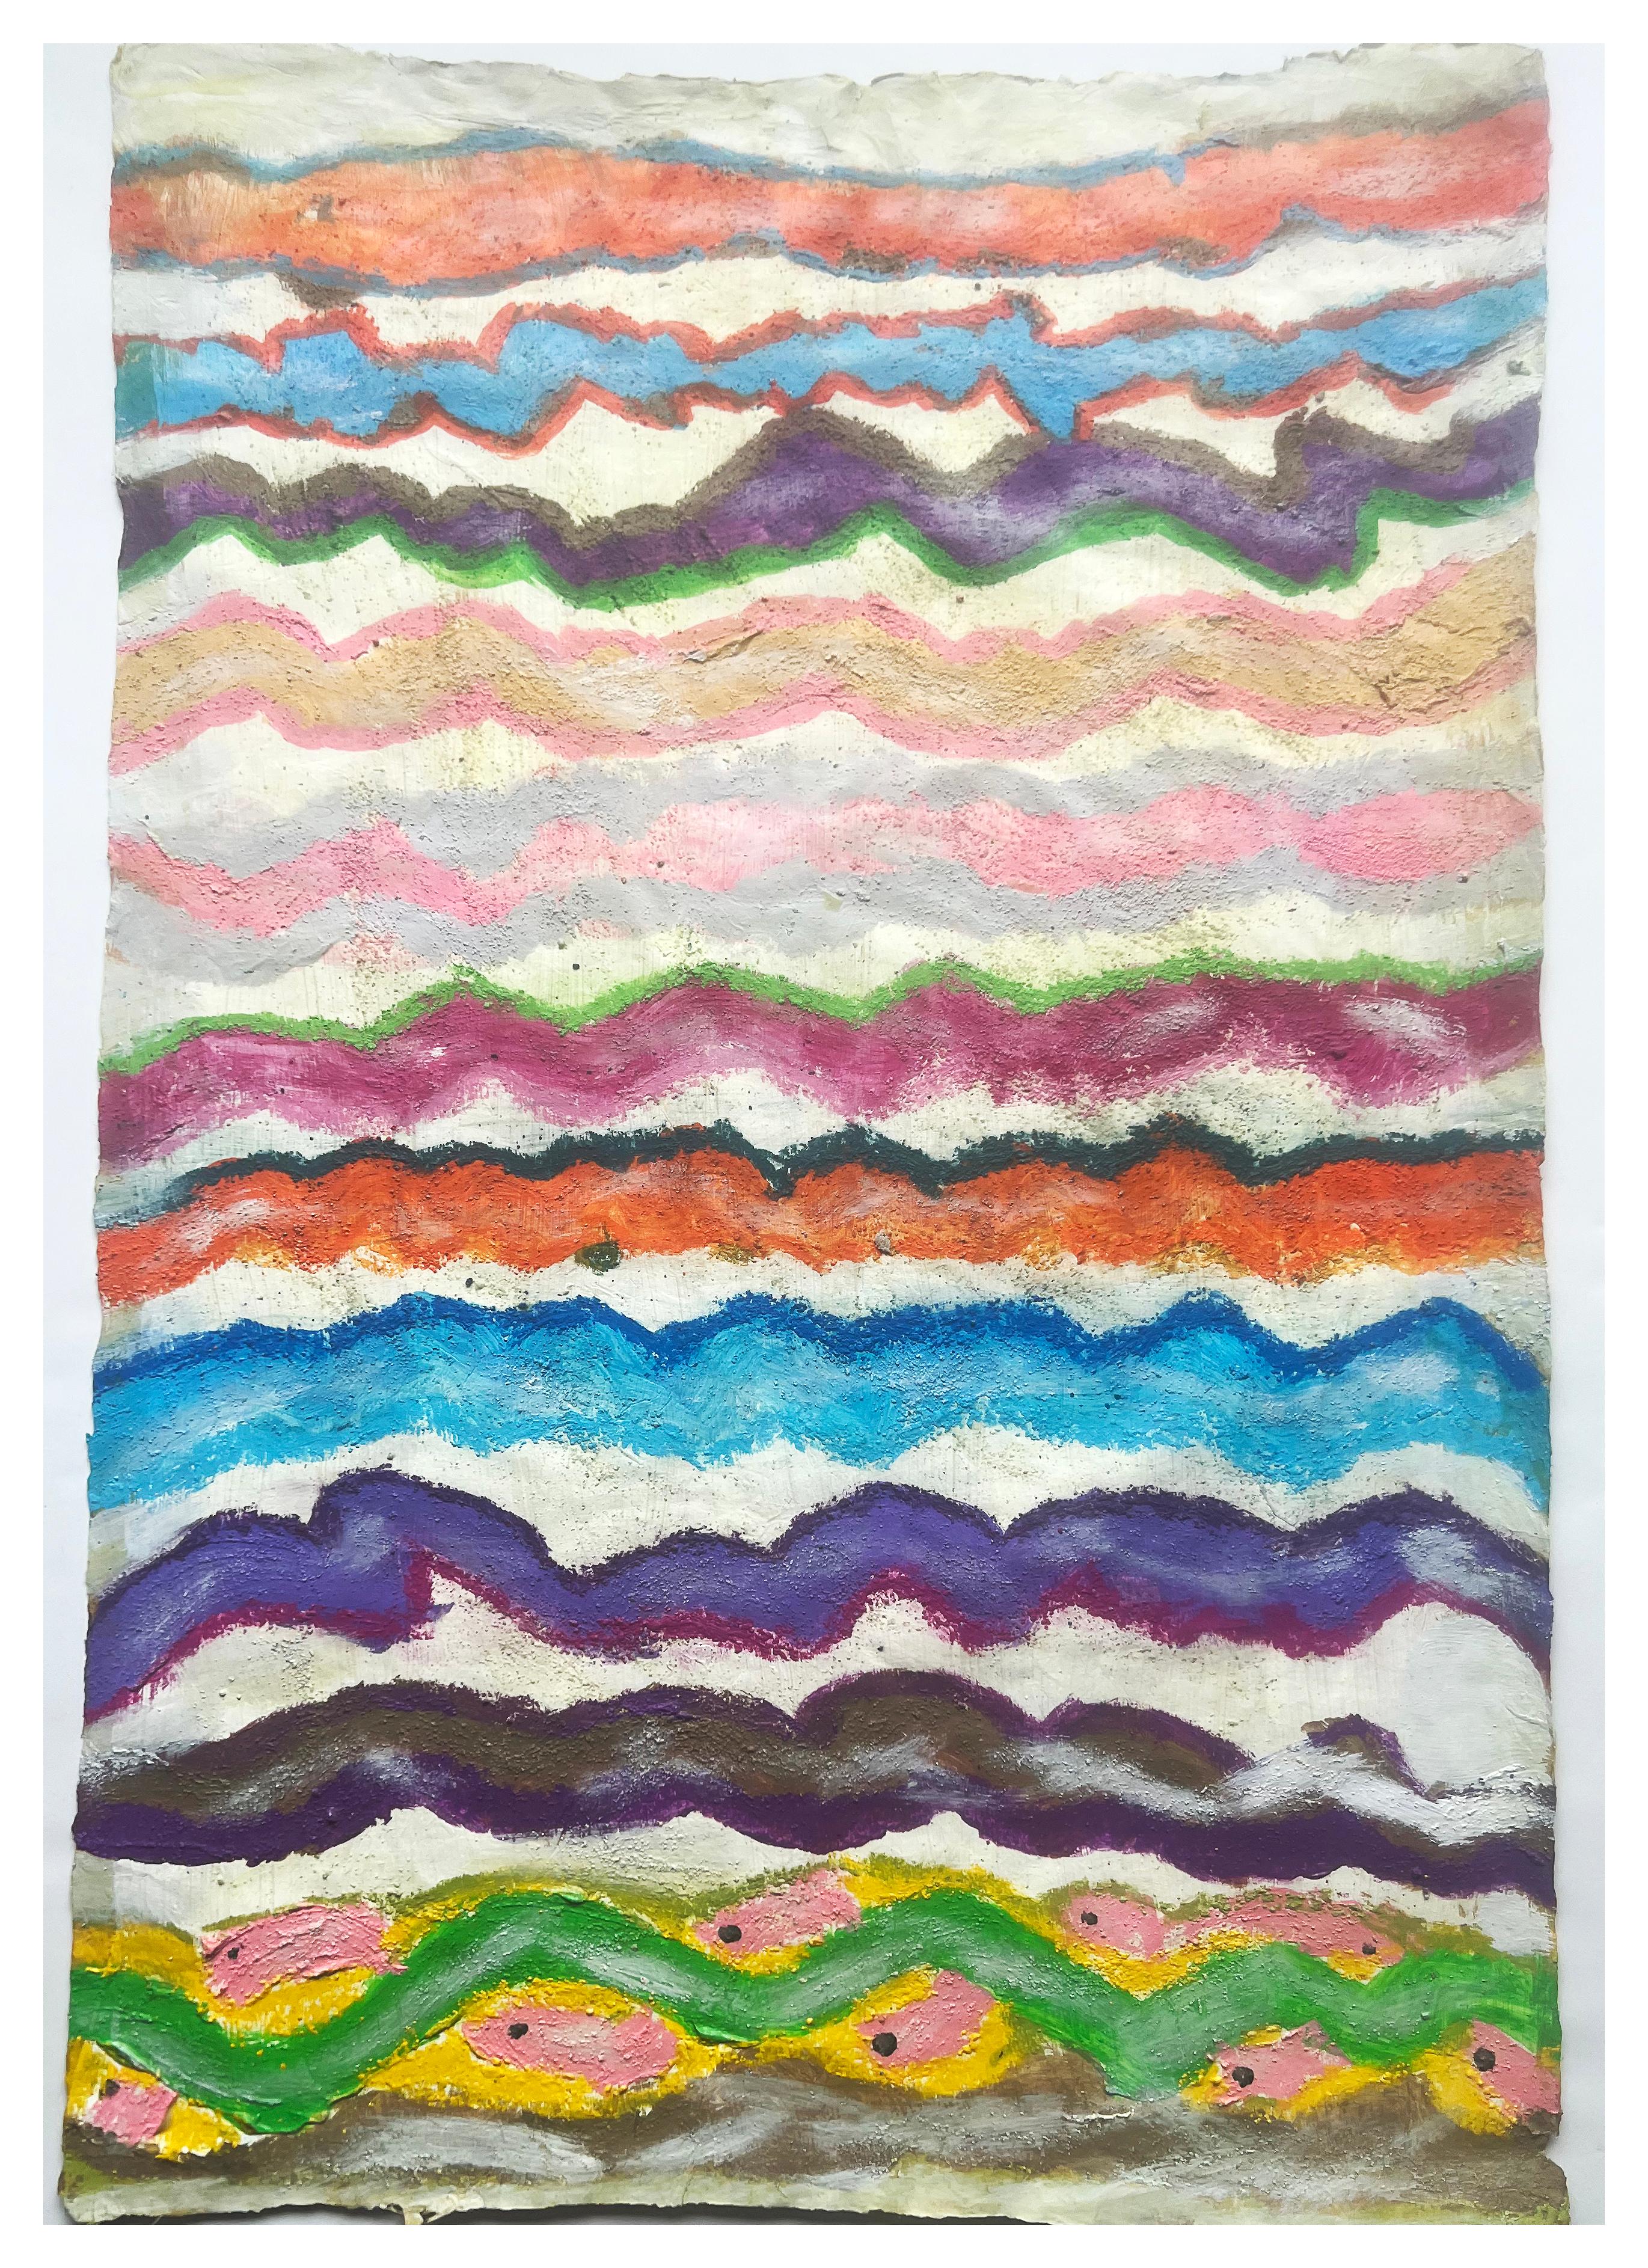 Fish, art mixte coloré sur papier Washi